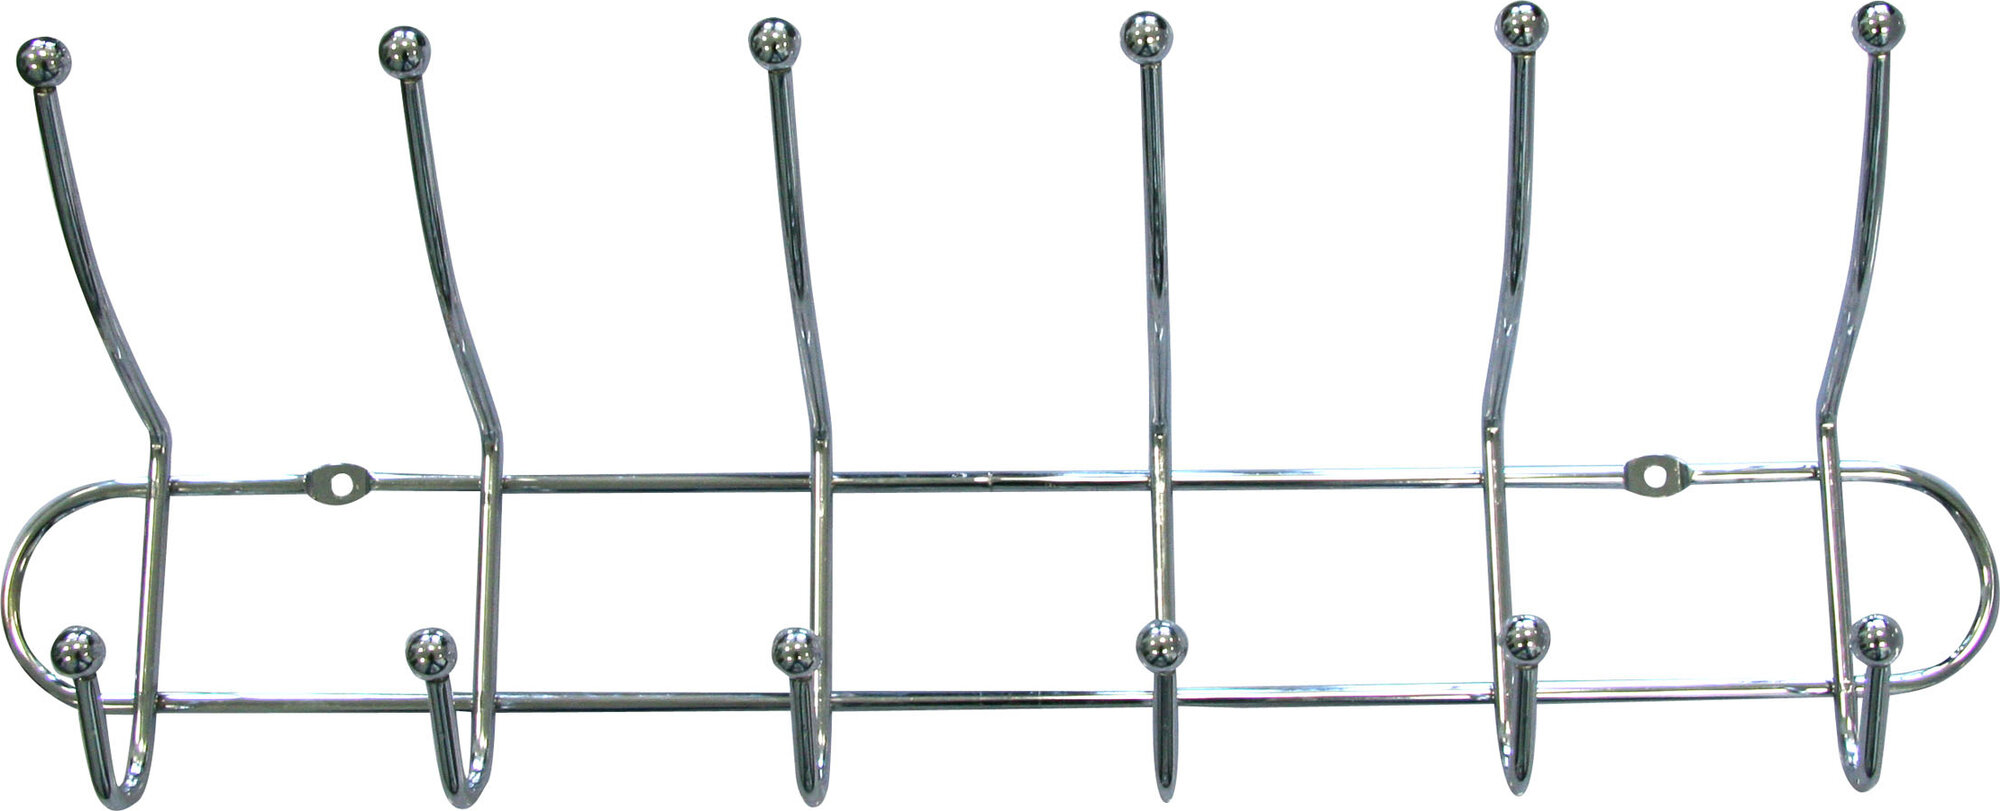 Вешалка AXENTIA с 6-ю двойными крючками, хромированная сталь, 51,5 x 20 x 10 см. вес до 3 кг